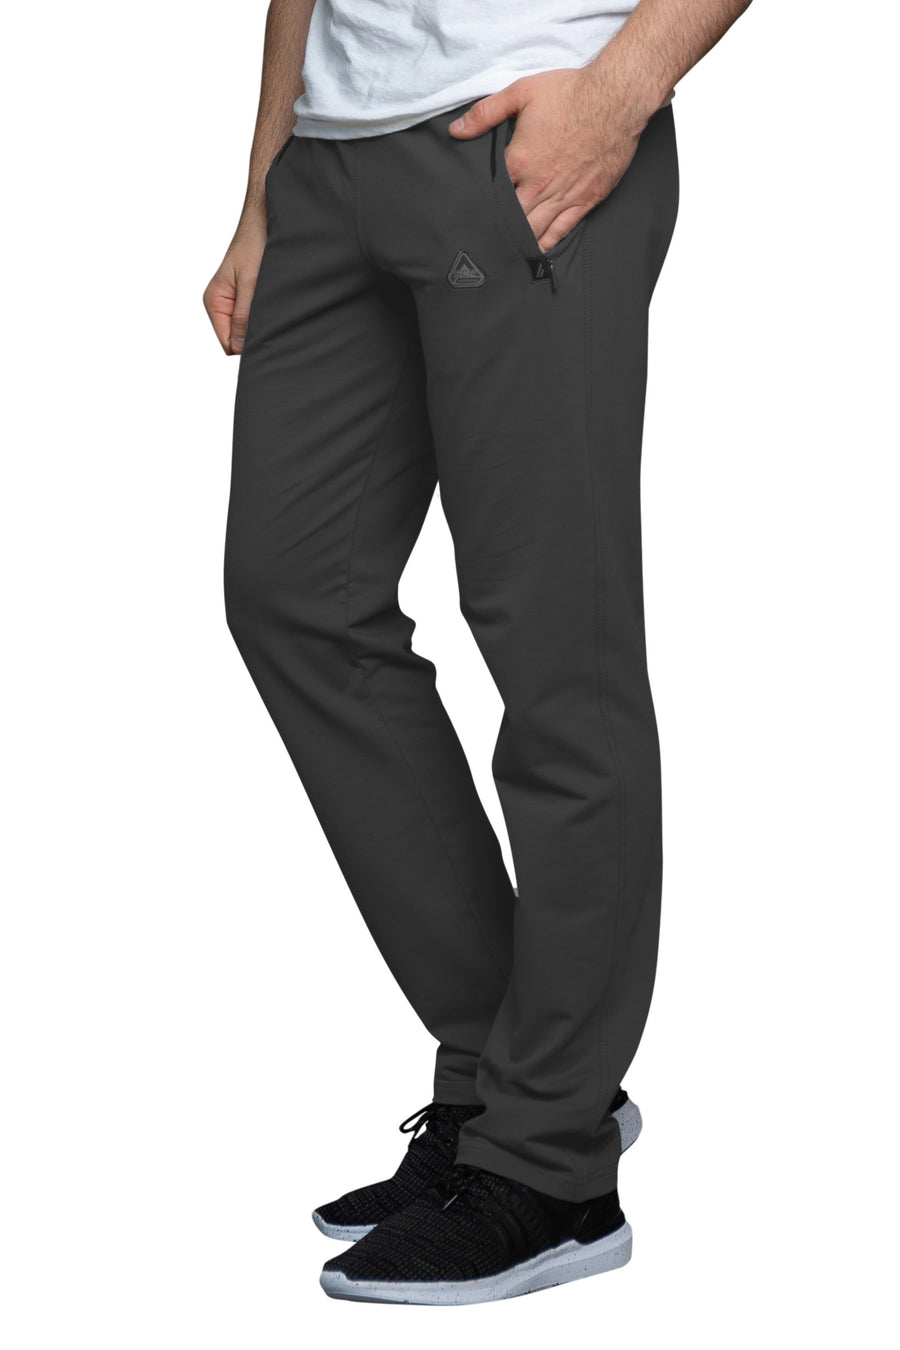 SCR Sportswear Men's sweatpants-Straight [434,SLIM Tall, 6'2-6'11] Large(33-35Waist) / 34 / Light Grey Heather | SCR Sportswear